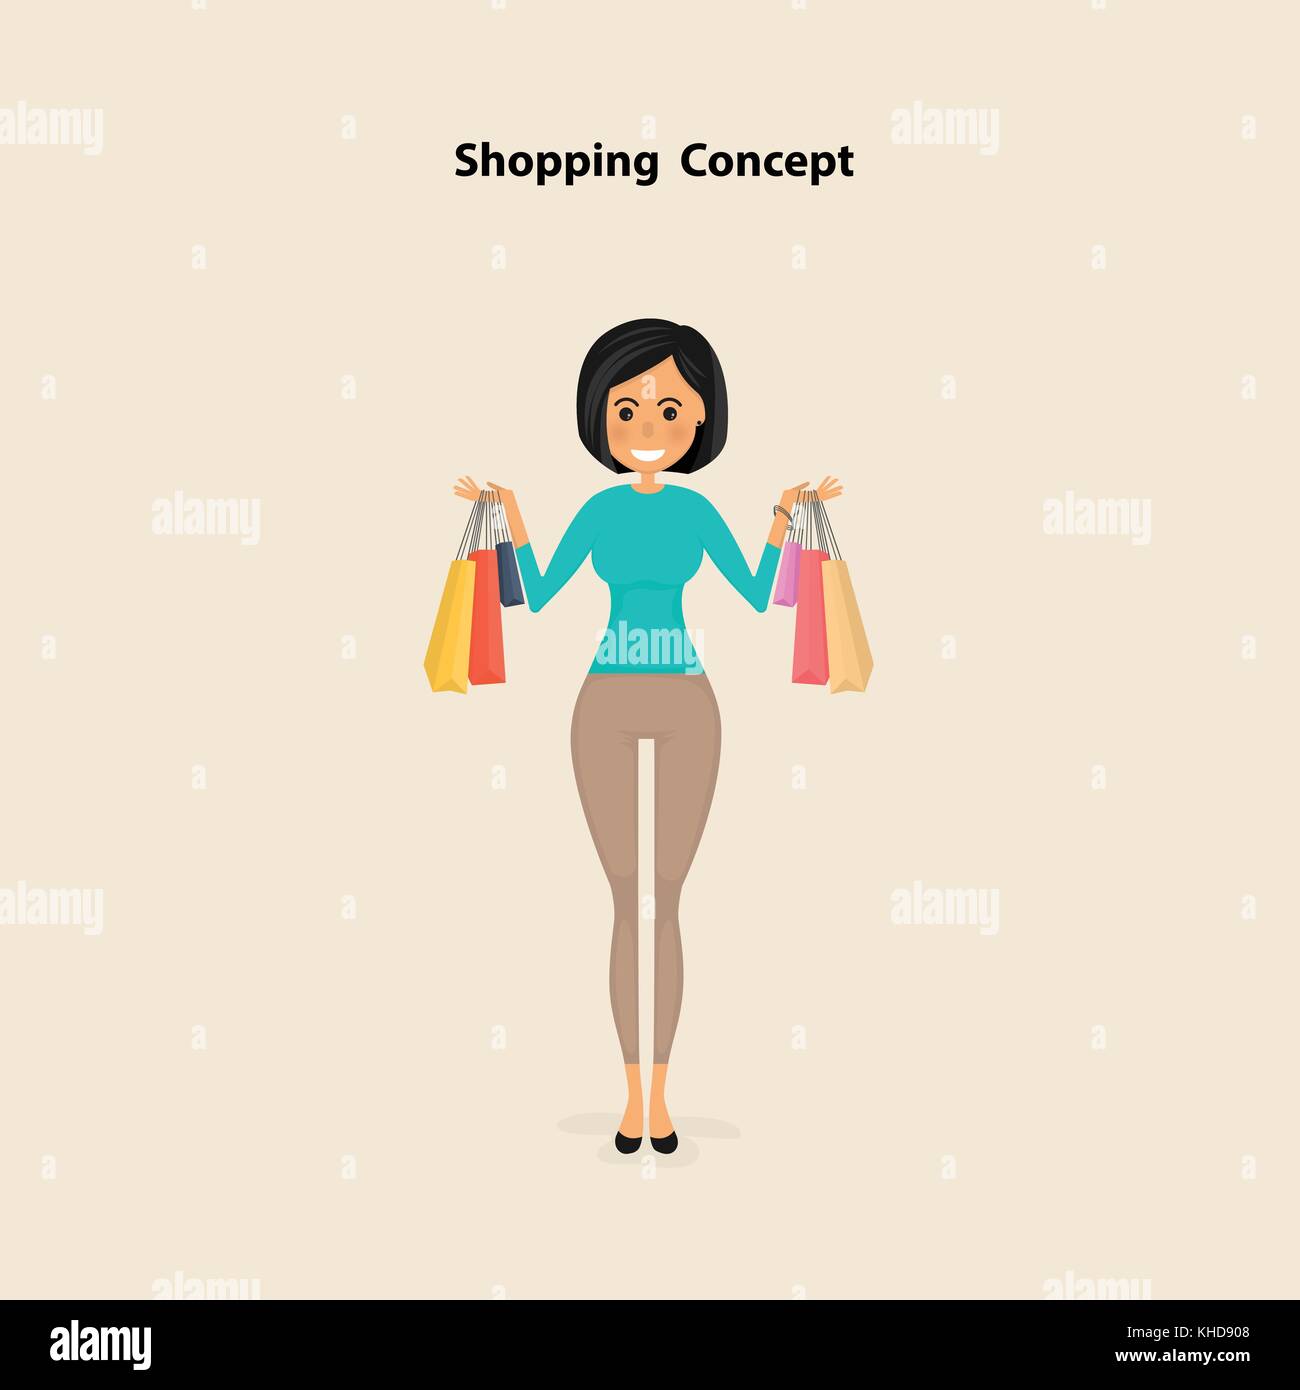 Junge Frau und Einkaufstaschen auf einem Hintergrund. Hübsche Frau für den Kauf von Produkten und Bestellungen mit Einkaufstüten. Shopping Konzept. Vektor illustrati Stock Vektor